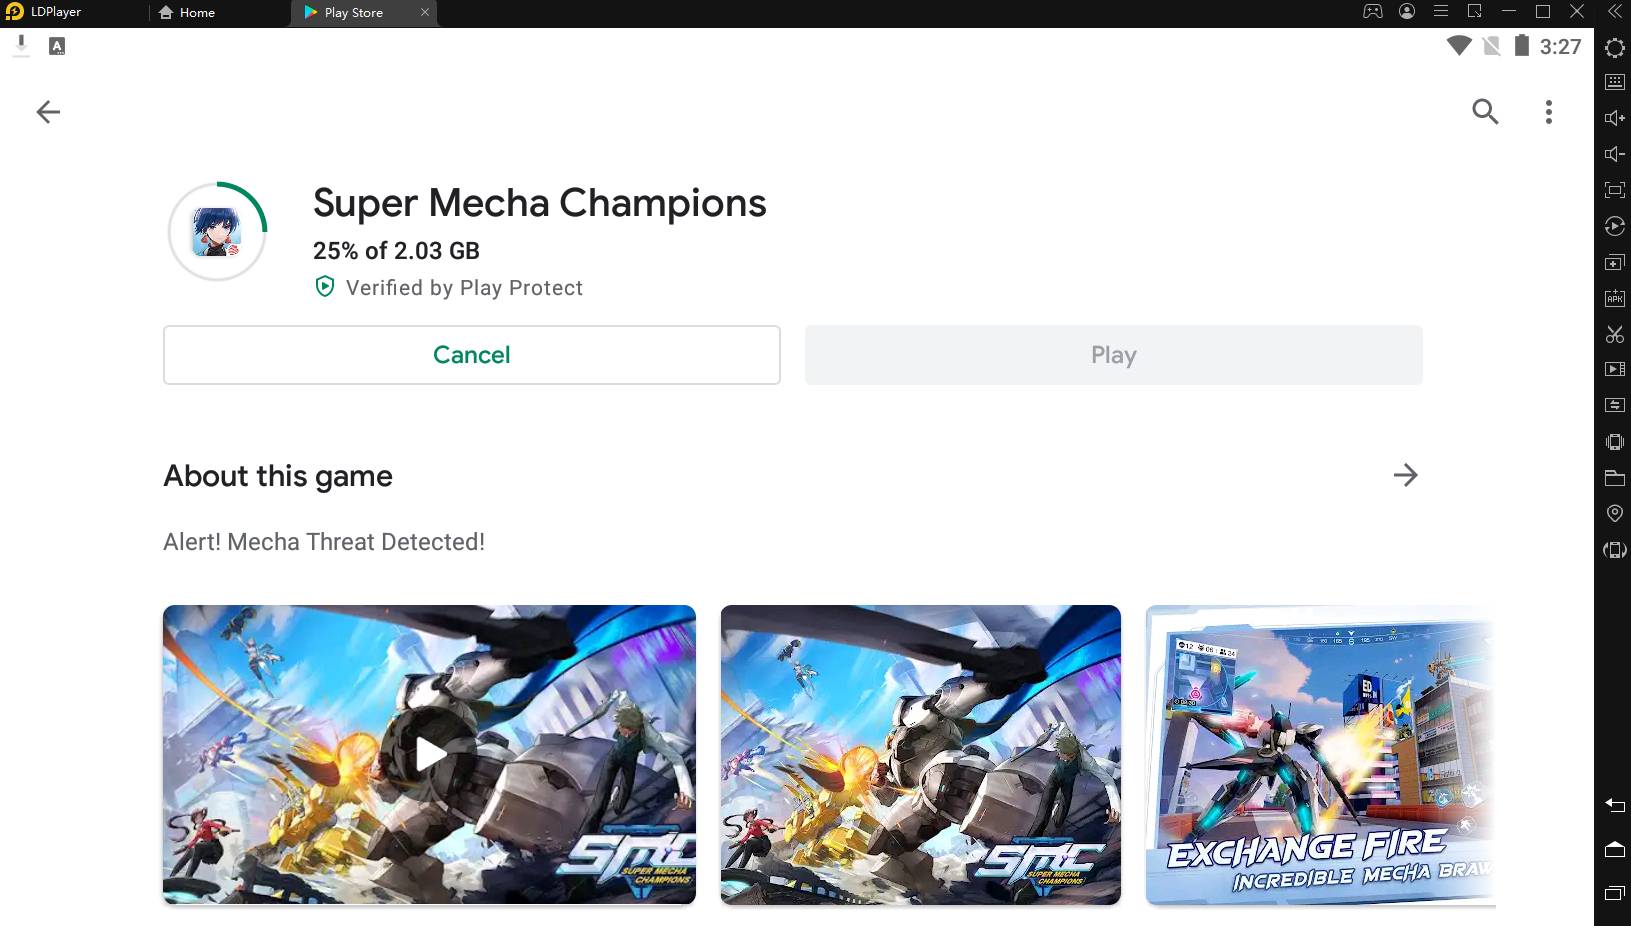 [Berita Game] Super Mecha Champions: Pertarungan Battle Royale Antar Robot Telah Dimulai!